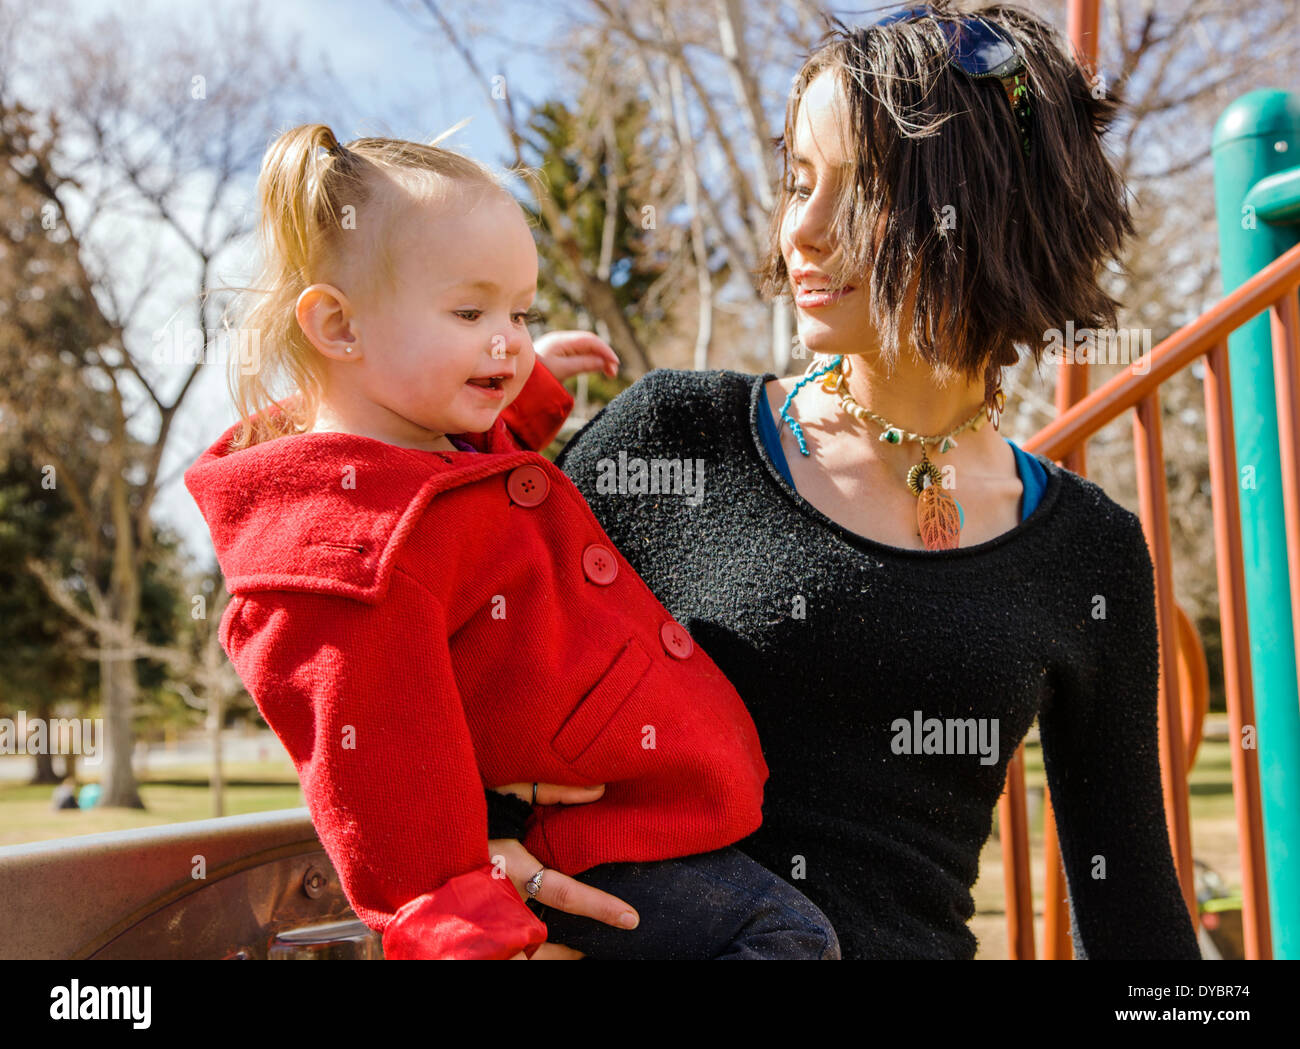 Belle jeune mère jouant avec adorable, jolie petite fille de 16 mois sur l'aire de stationnement Banque D'Images